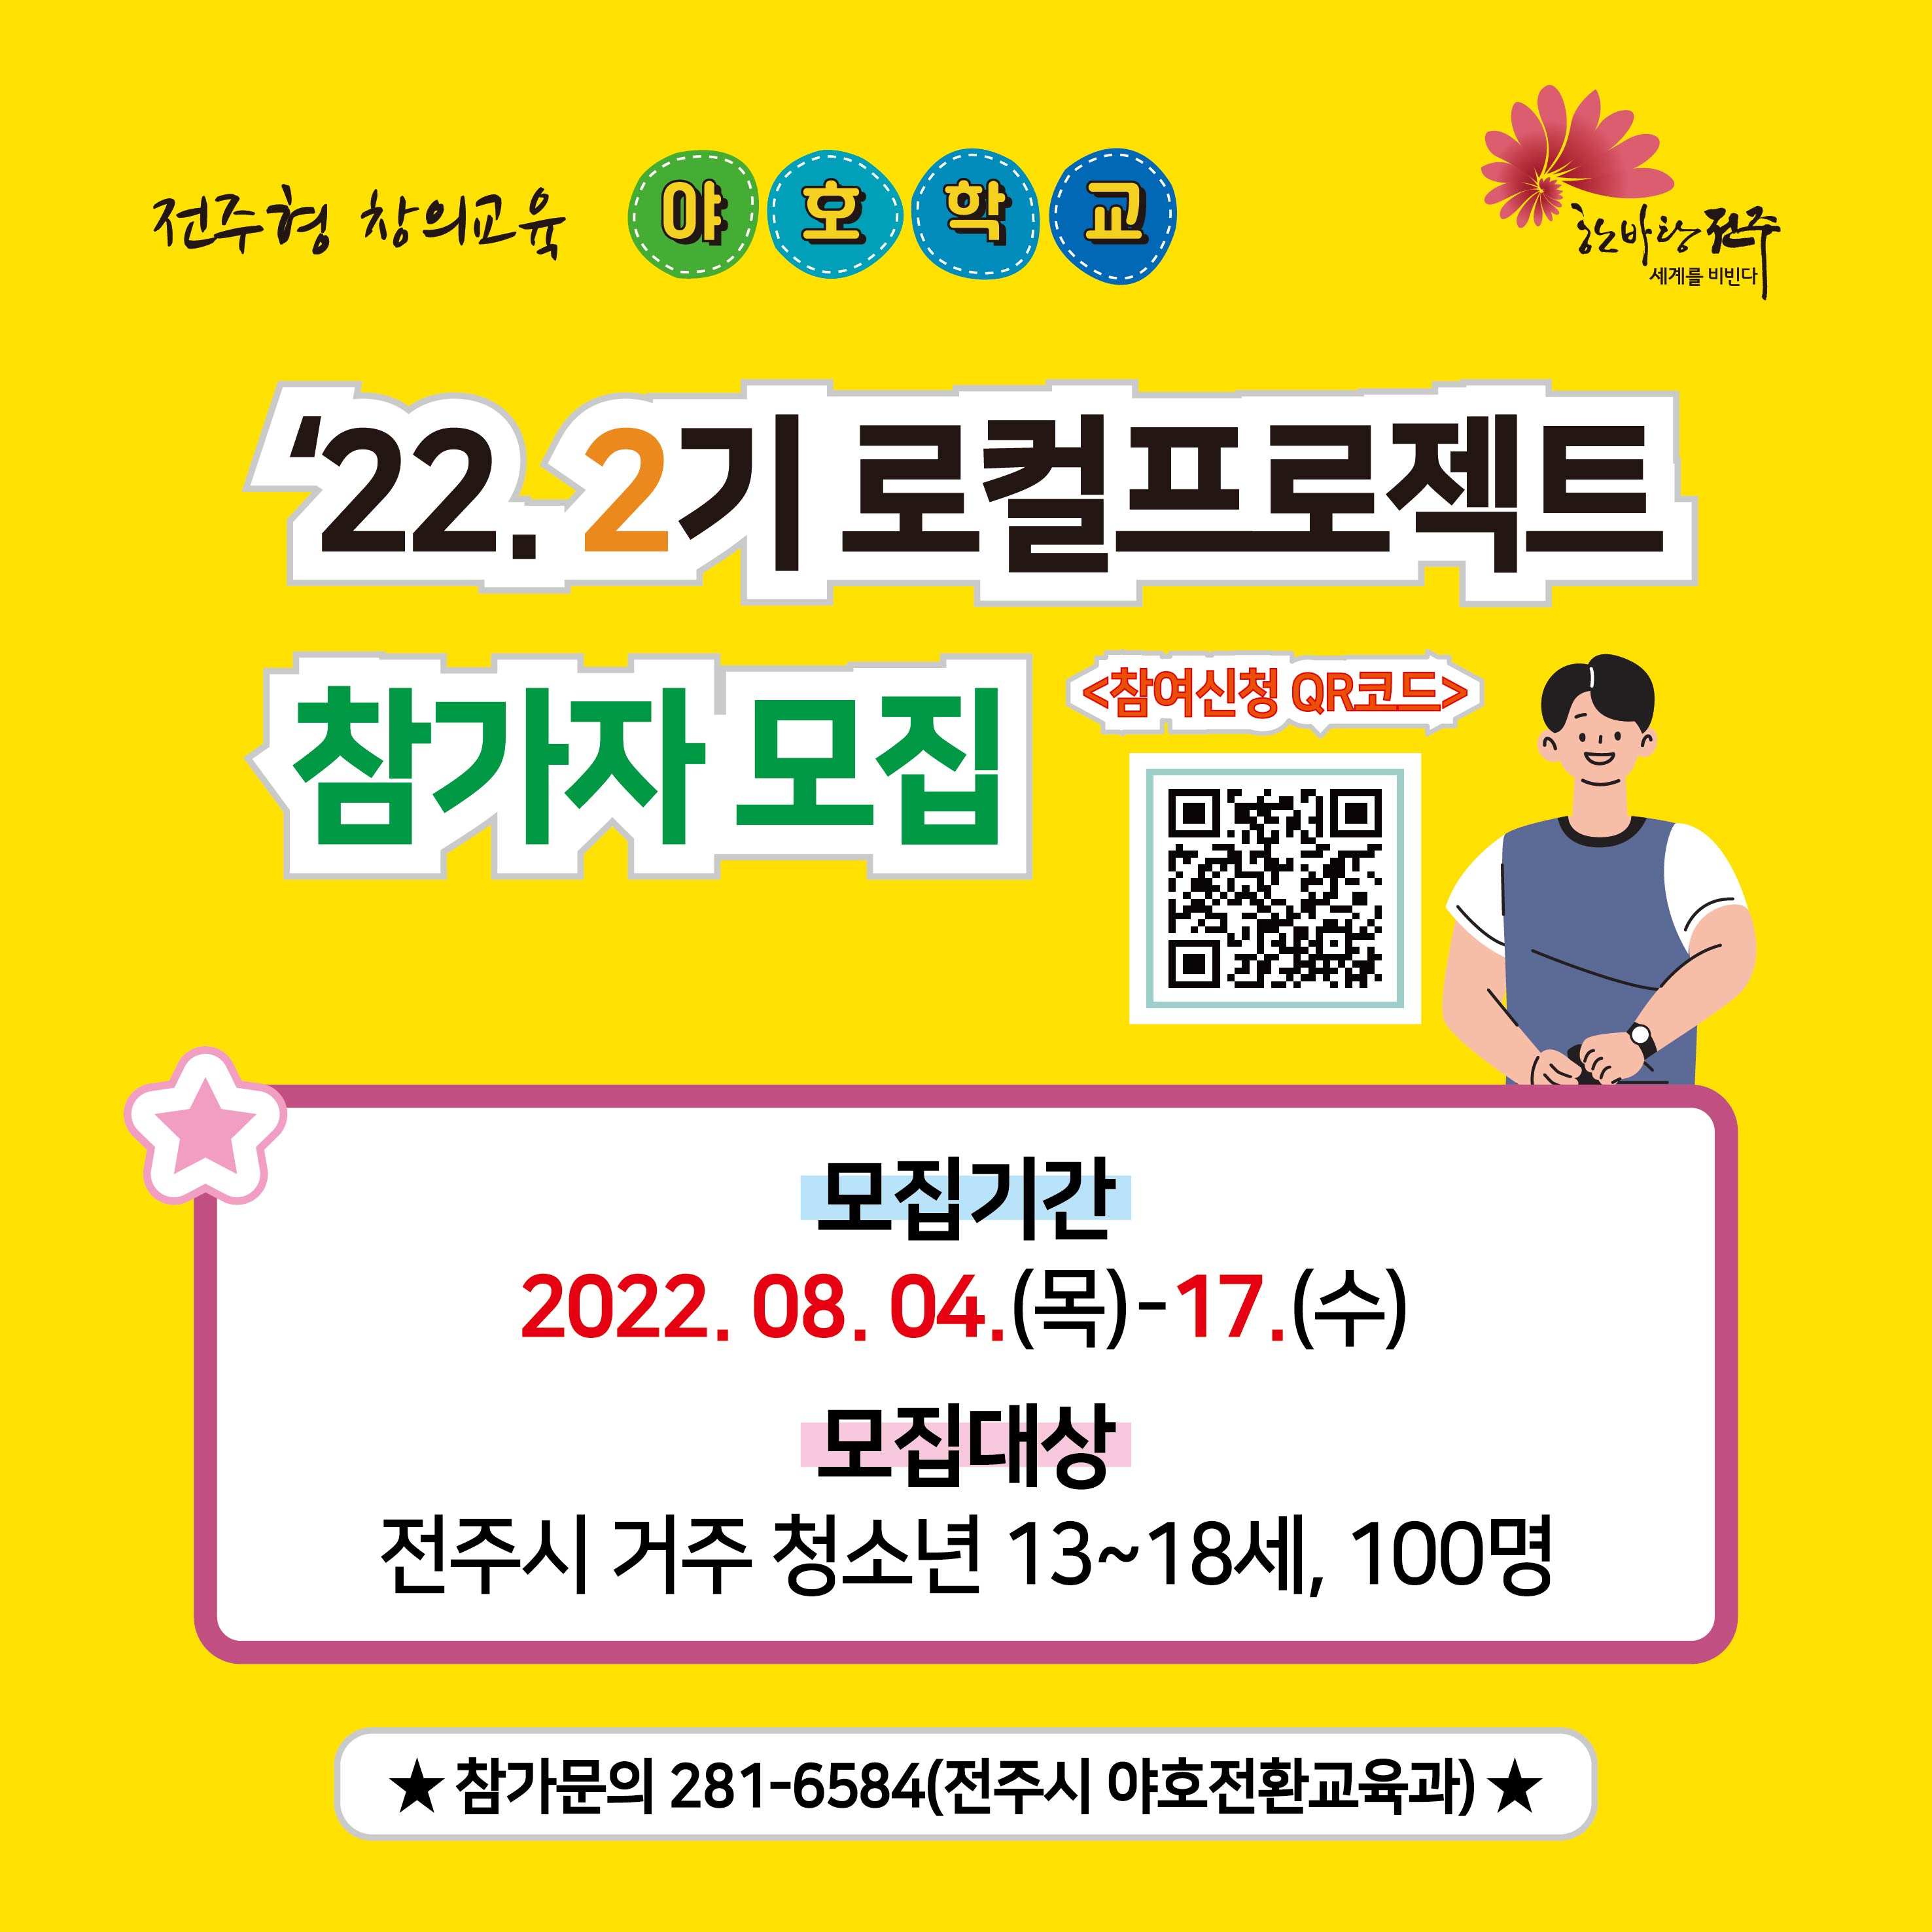 야호학교 '22. 2기 로컬프로젝트 참여자 모집